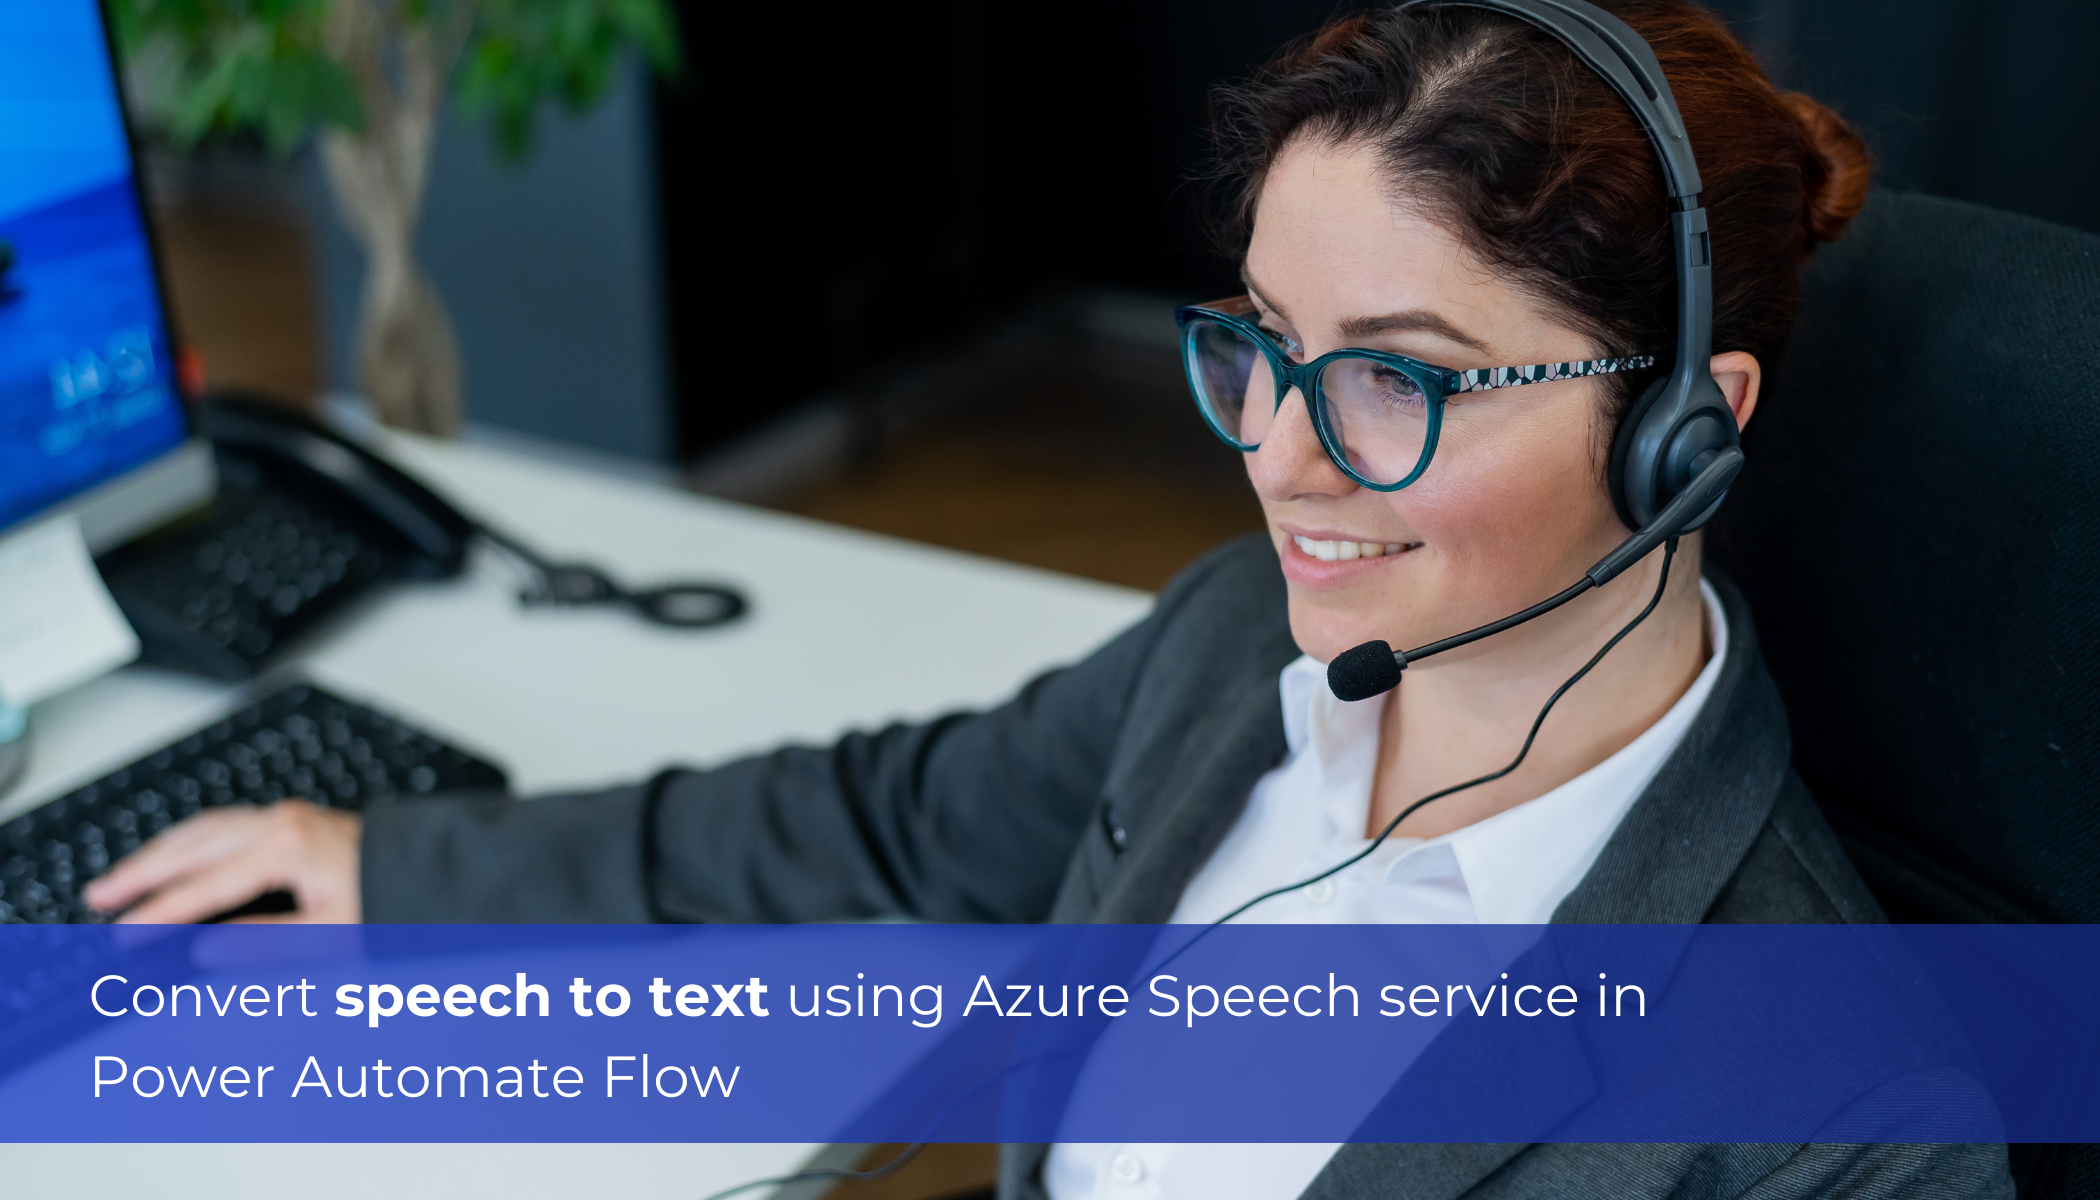 Convert speech to text using Azure Speech service